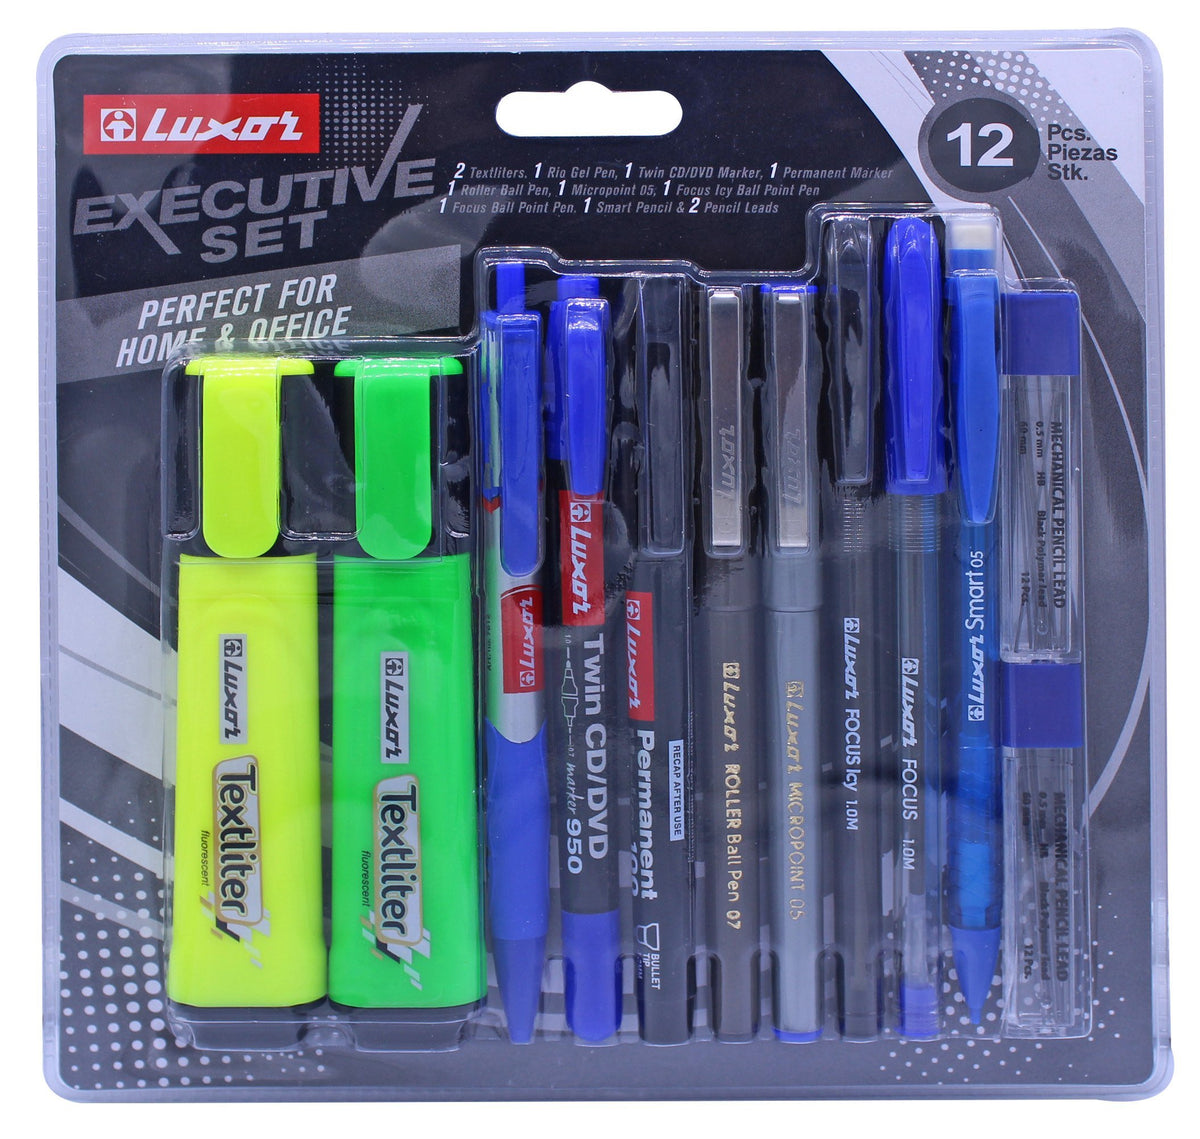 72 Pieces Executive Set (12pc Blister) - Pens & Pencils